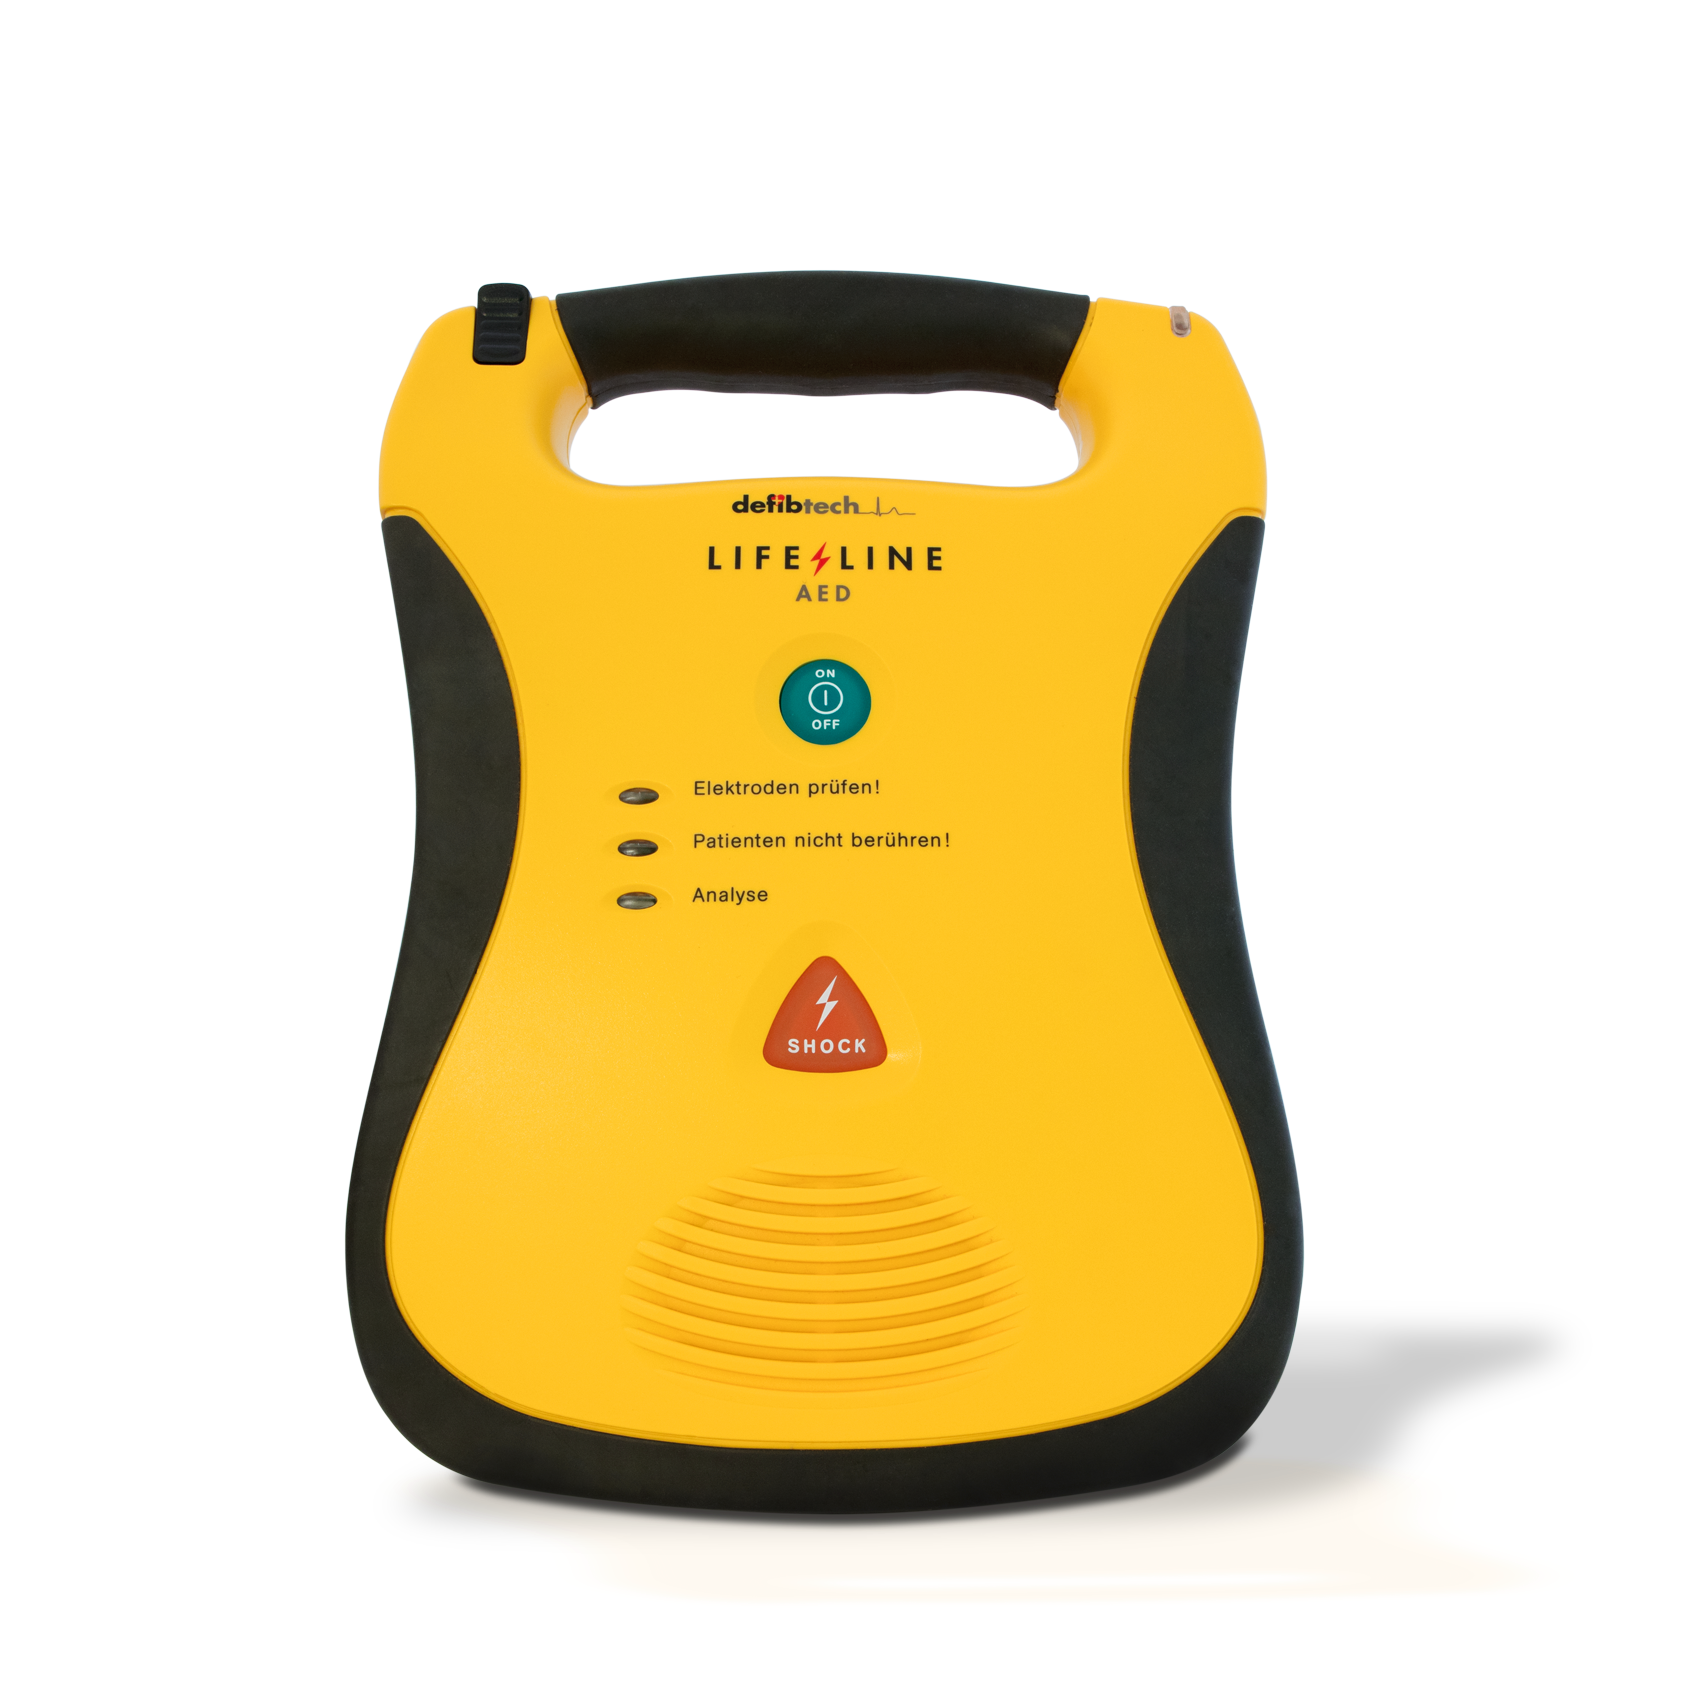 Lifeline AED